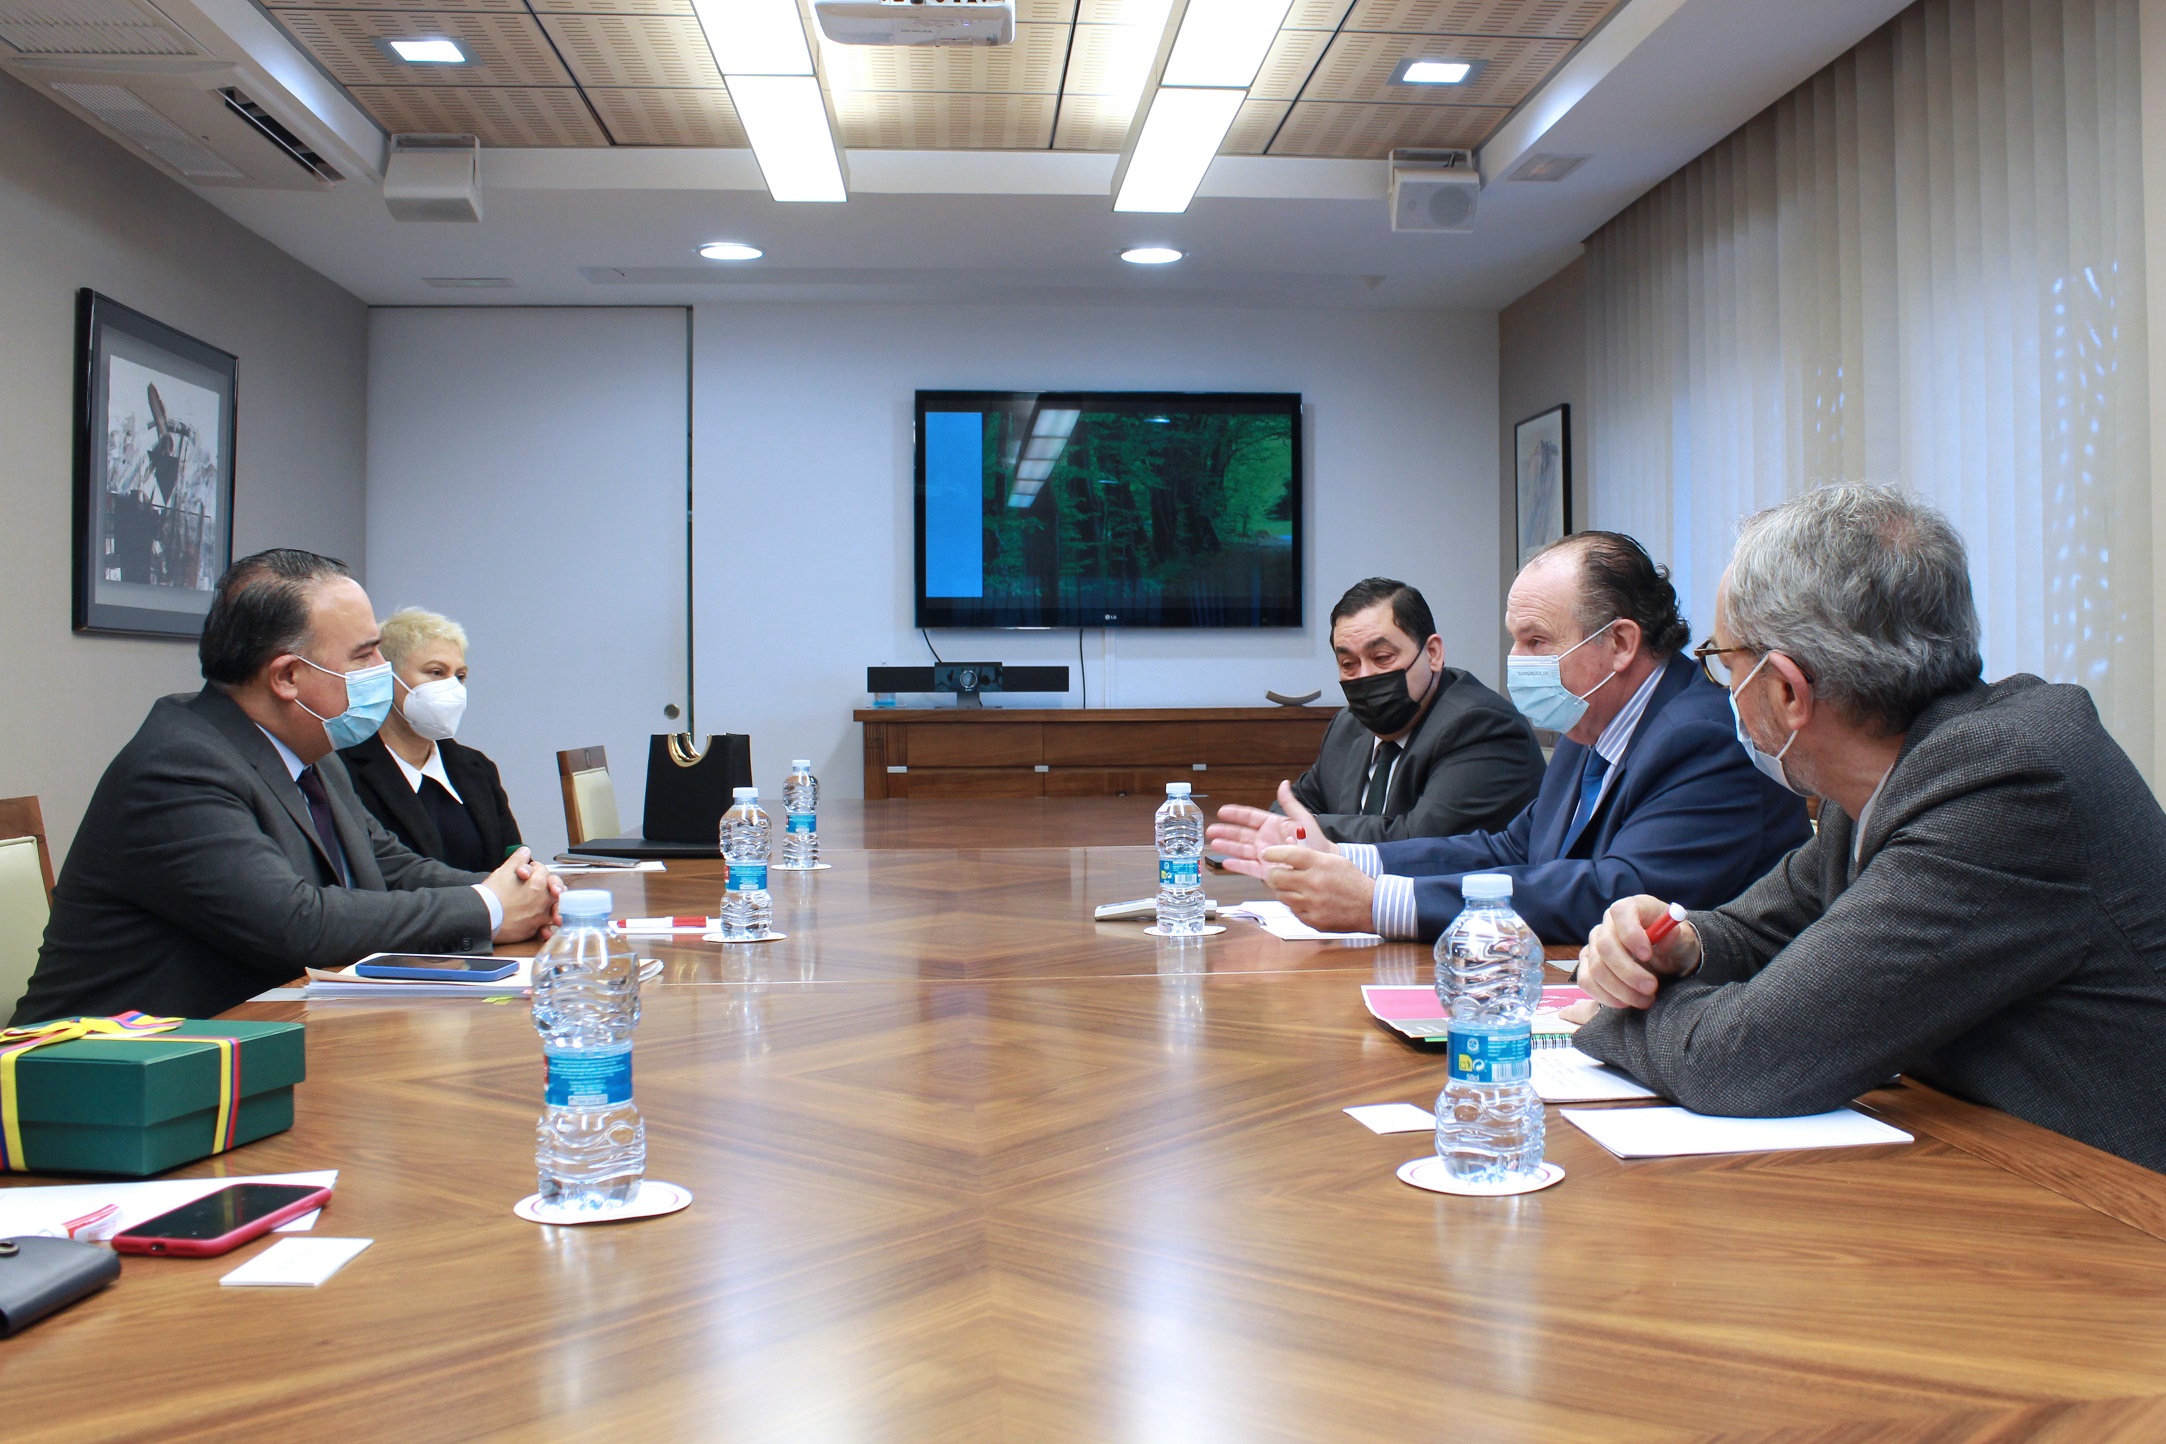 Fotonoticia: el embajador de Colombia en España se reúne con un grupo de empresarios en Cámara Valencia